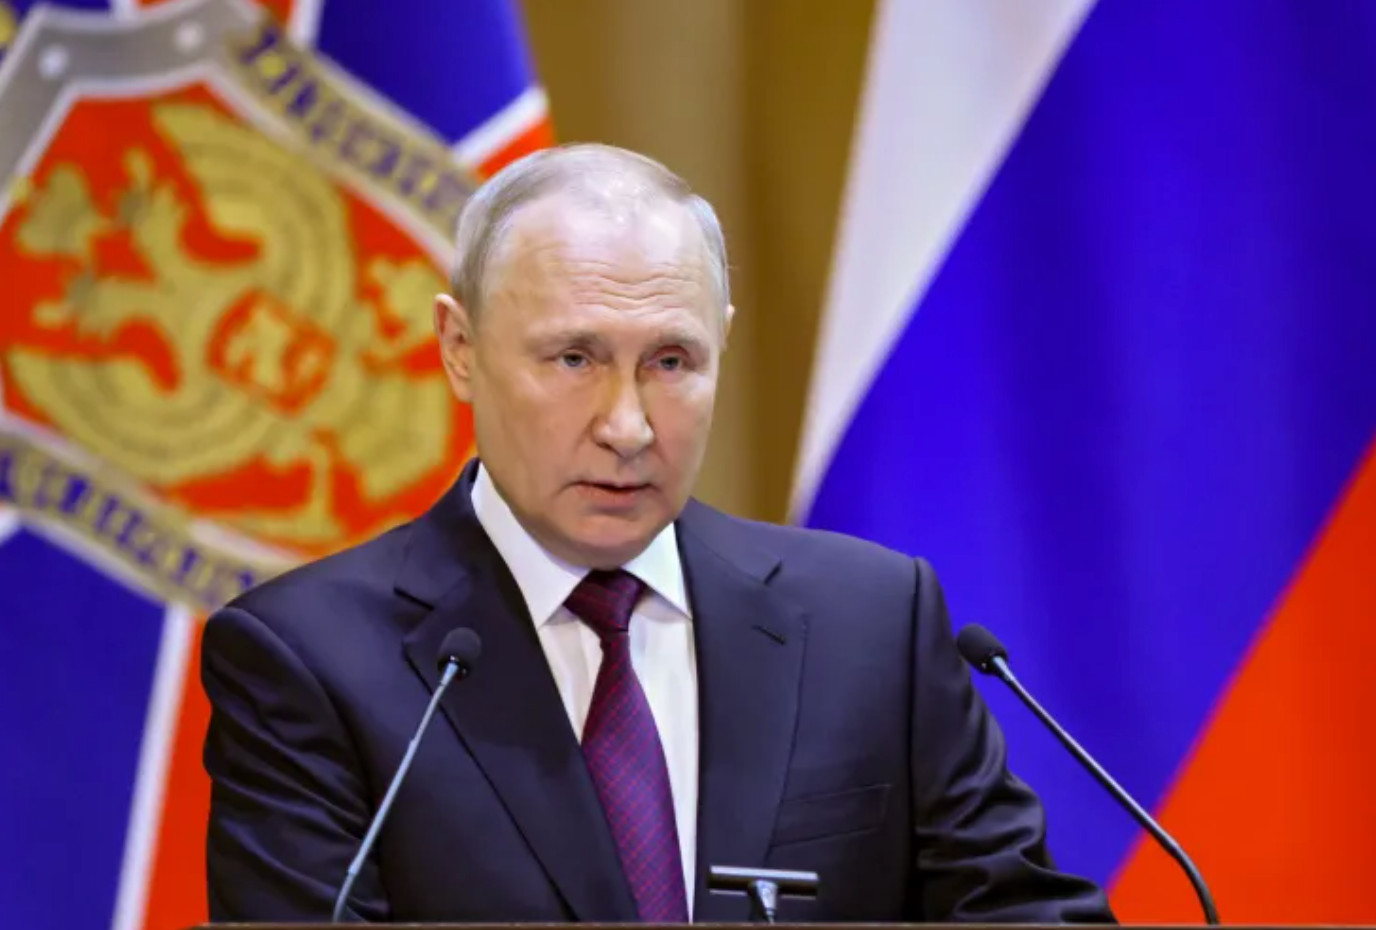 Tin vắn thế giới ngày 1/3: Tổng thống Nga Putin lệnh cho FSB tăng cường hoạt động phản gián